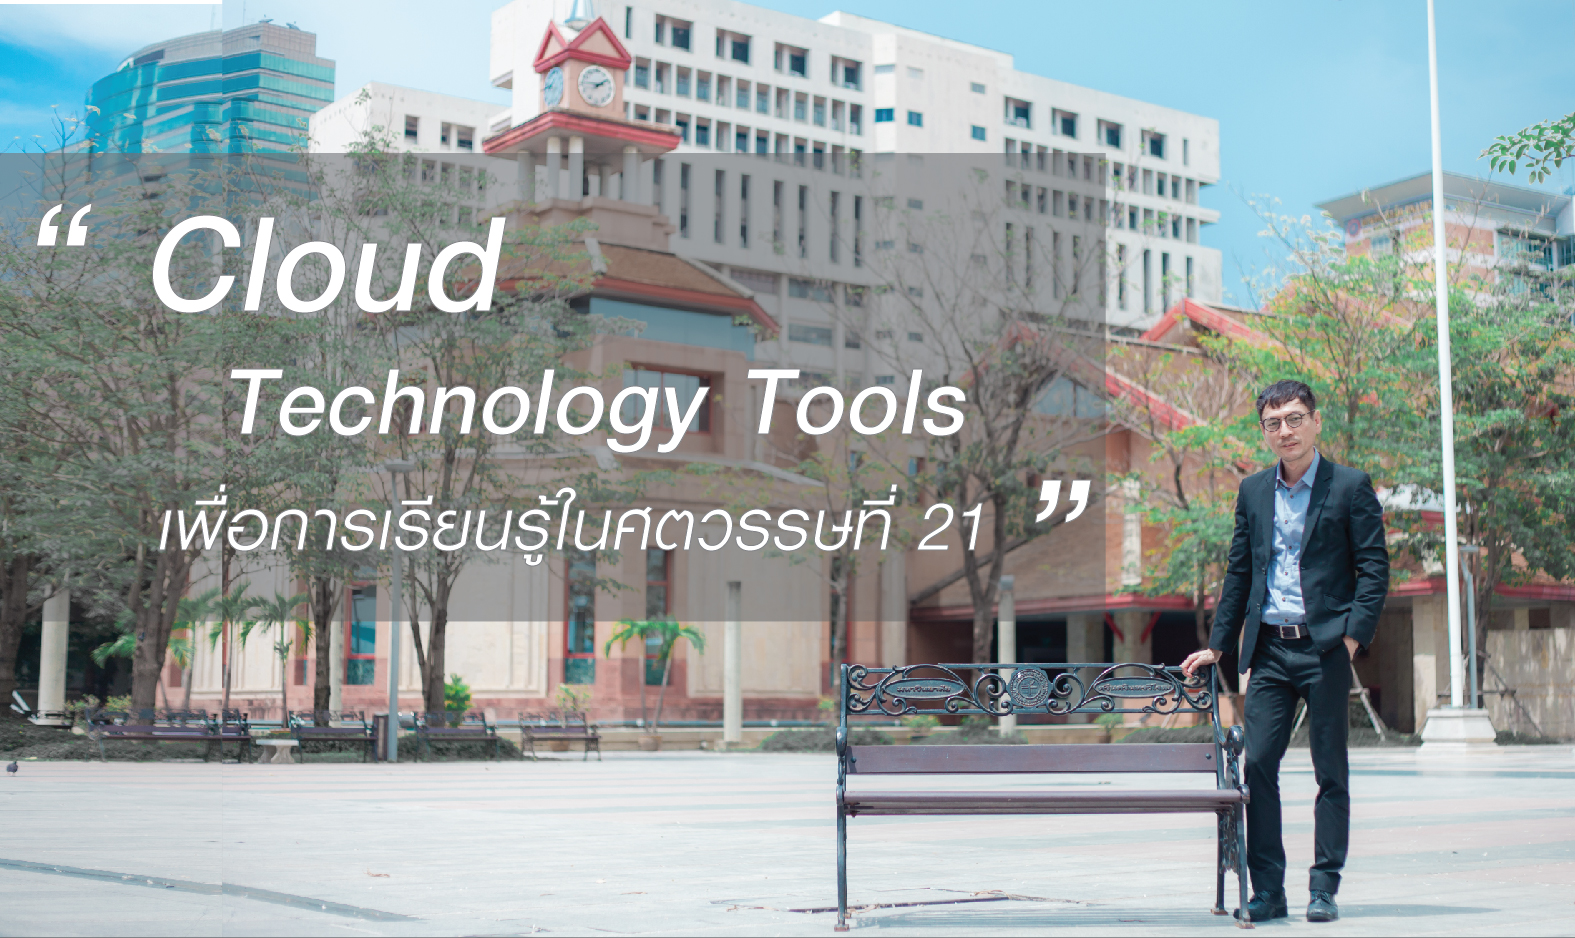 Cloud Technology Tools เพื่อการเรียนรู้ในศตวรรษที่ 21